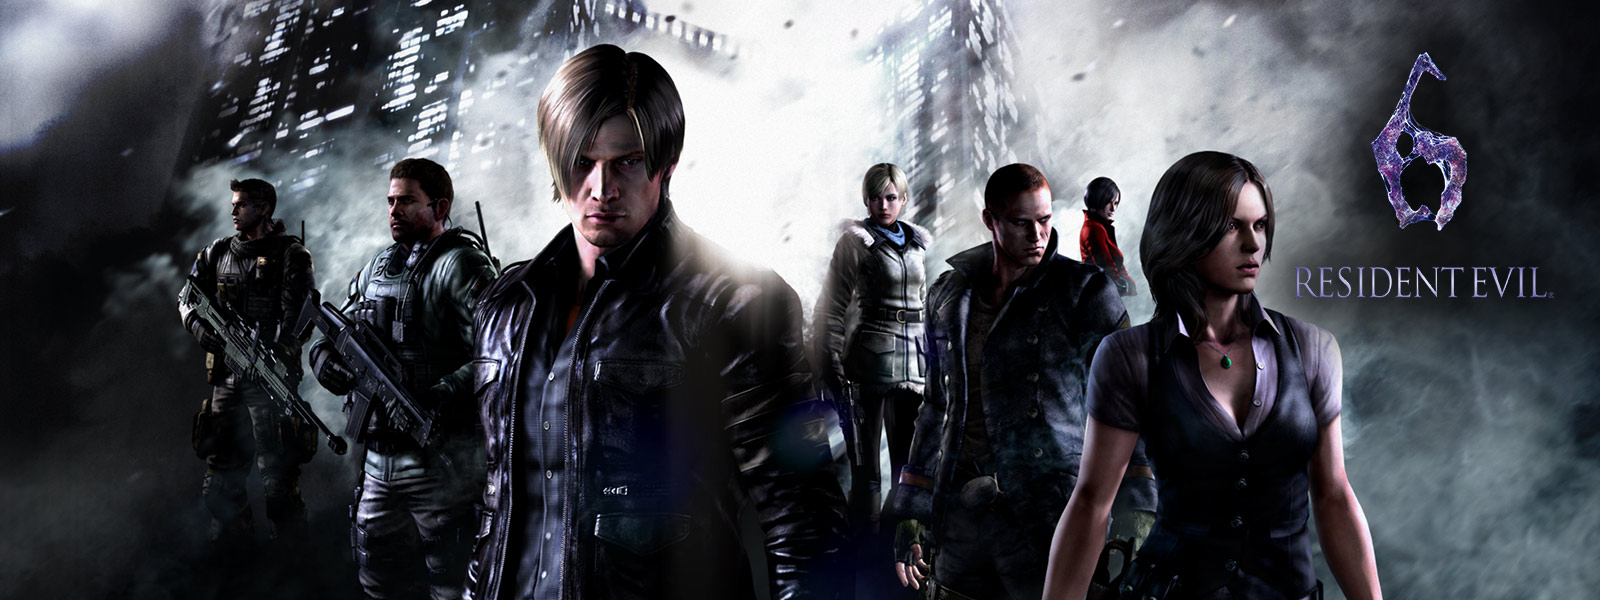 Resident Evil 6, alle personages staan voor onheilspellende wolkenkrabbers